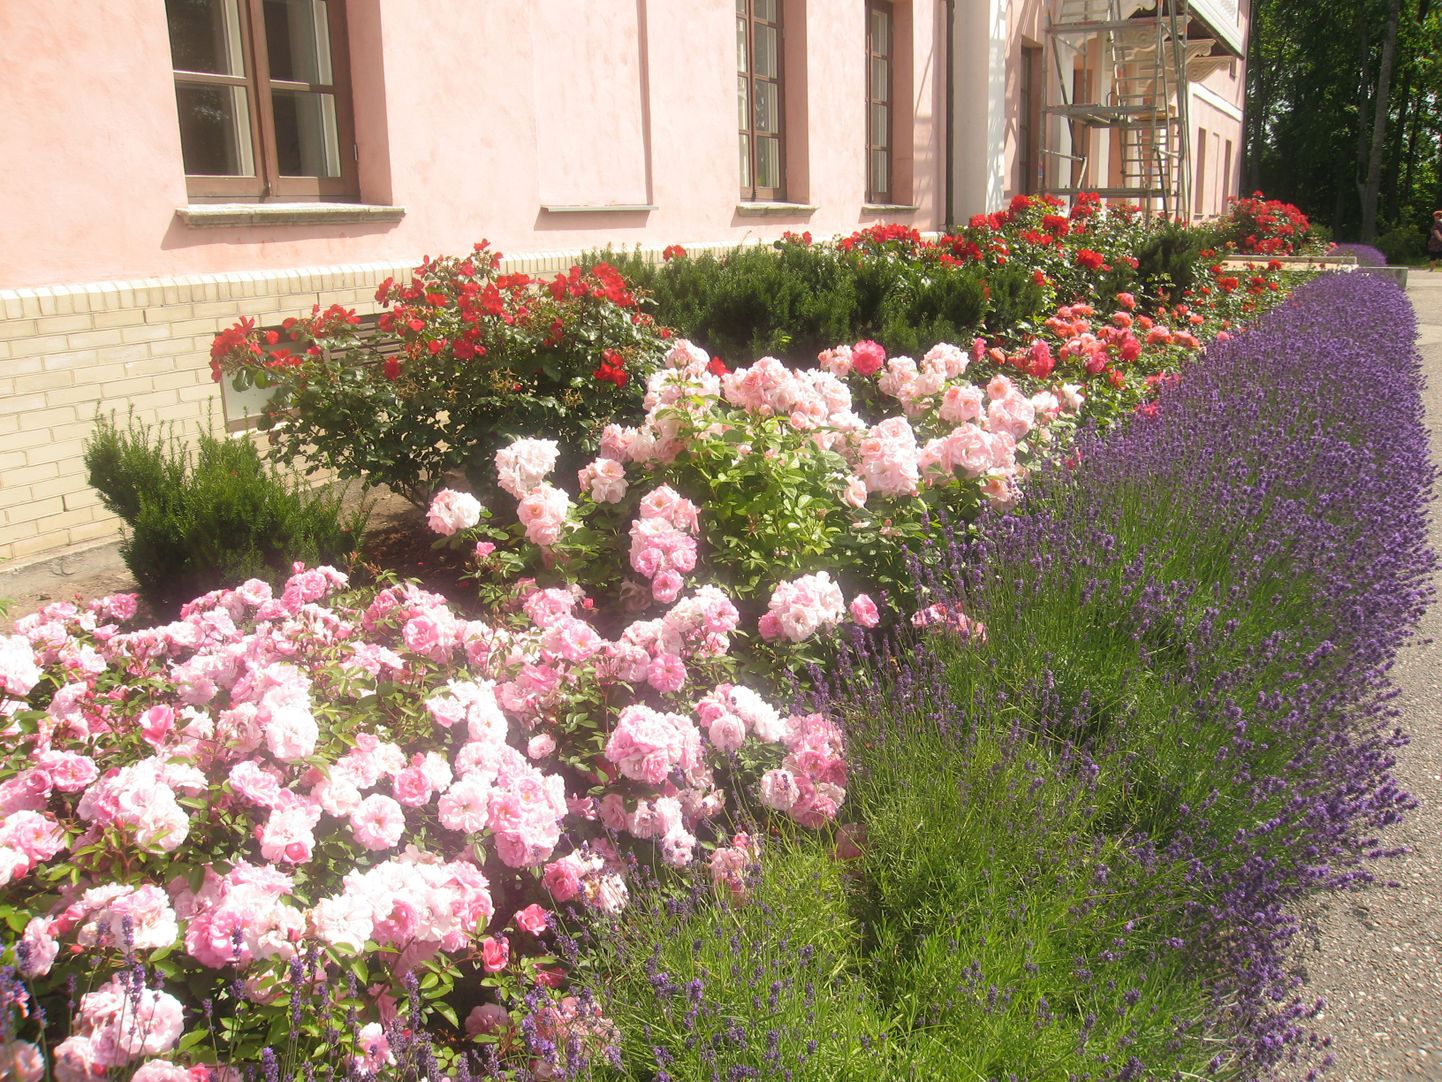 Roosid ja lavendlid Tõstamaa mõisa ees. Lavendel peletab roosidest eemale lehetäid.